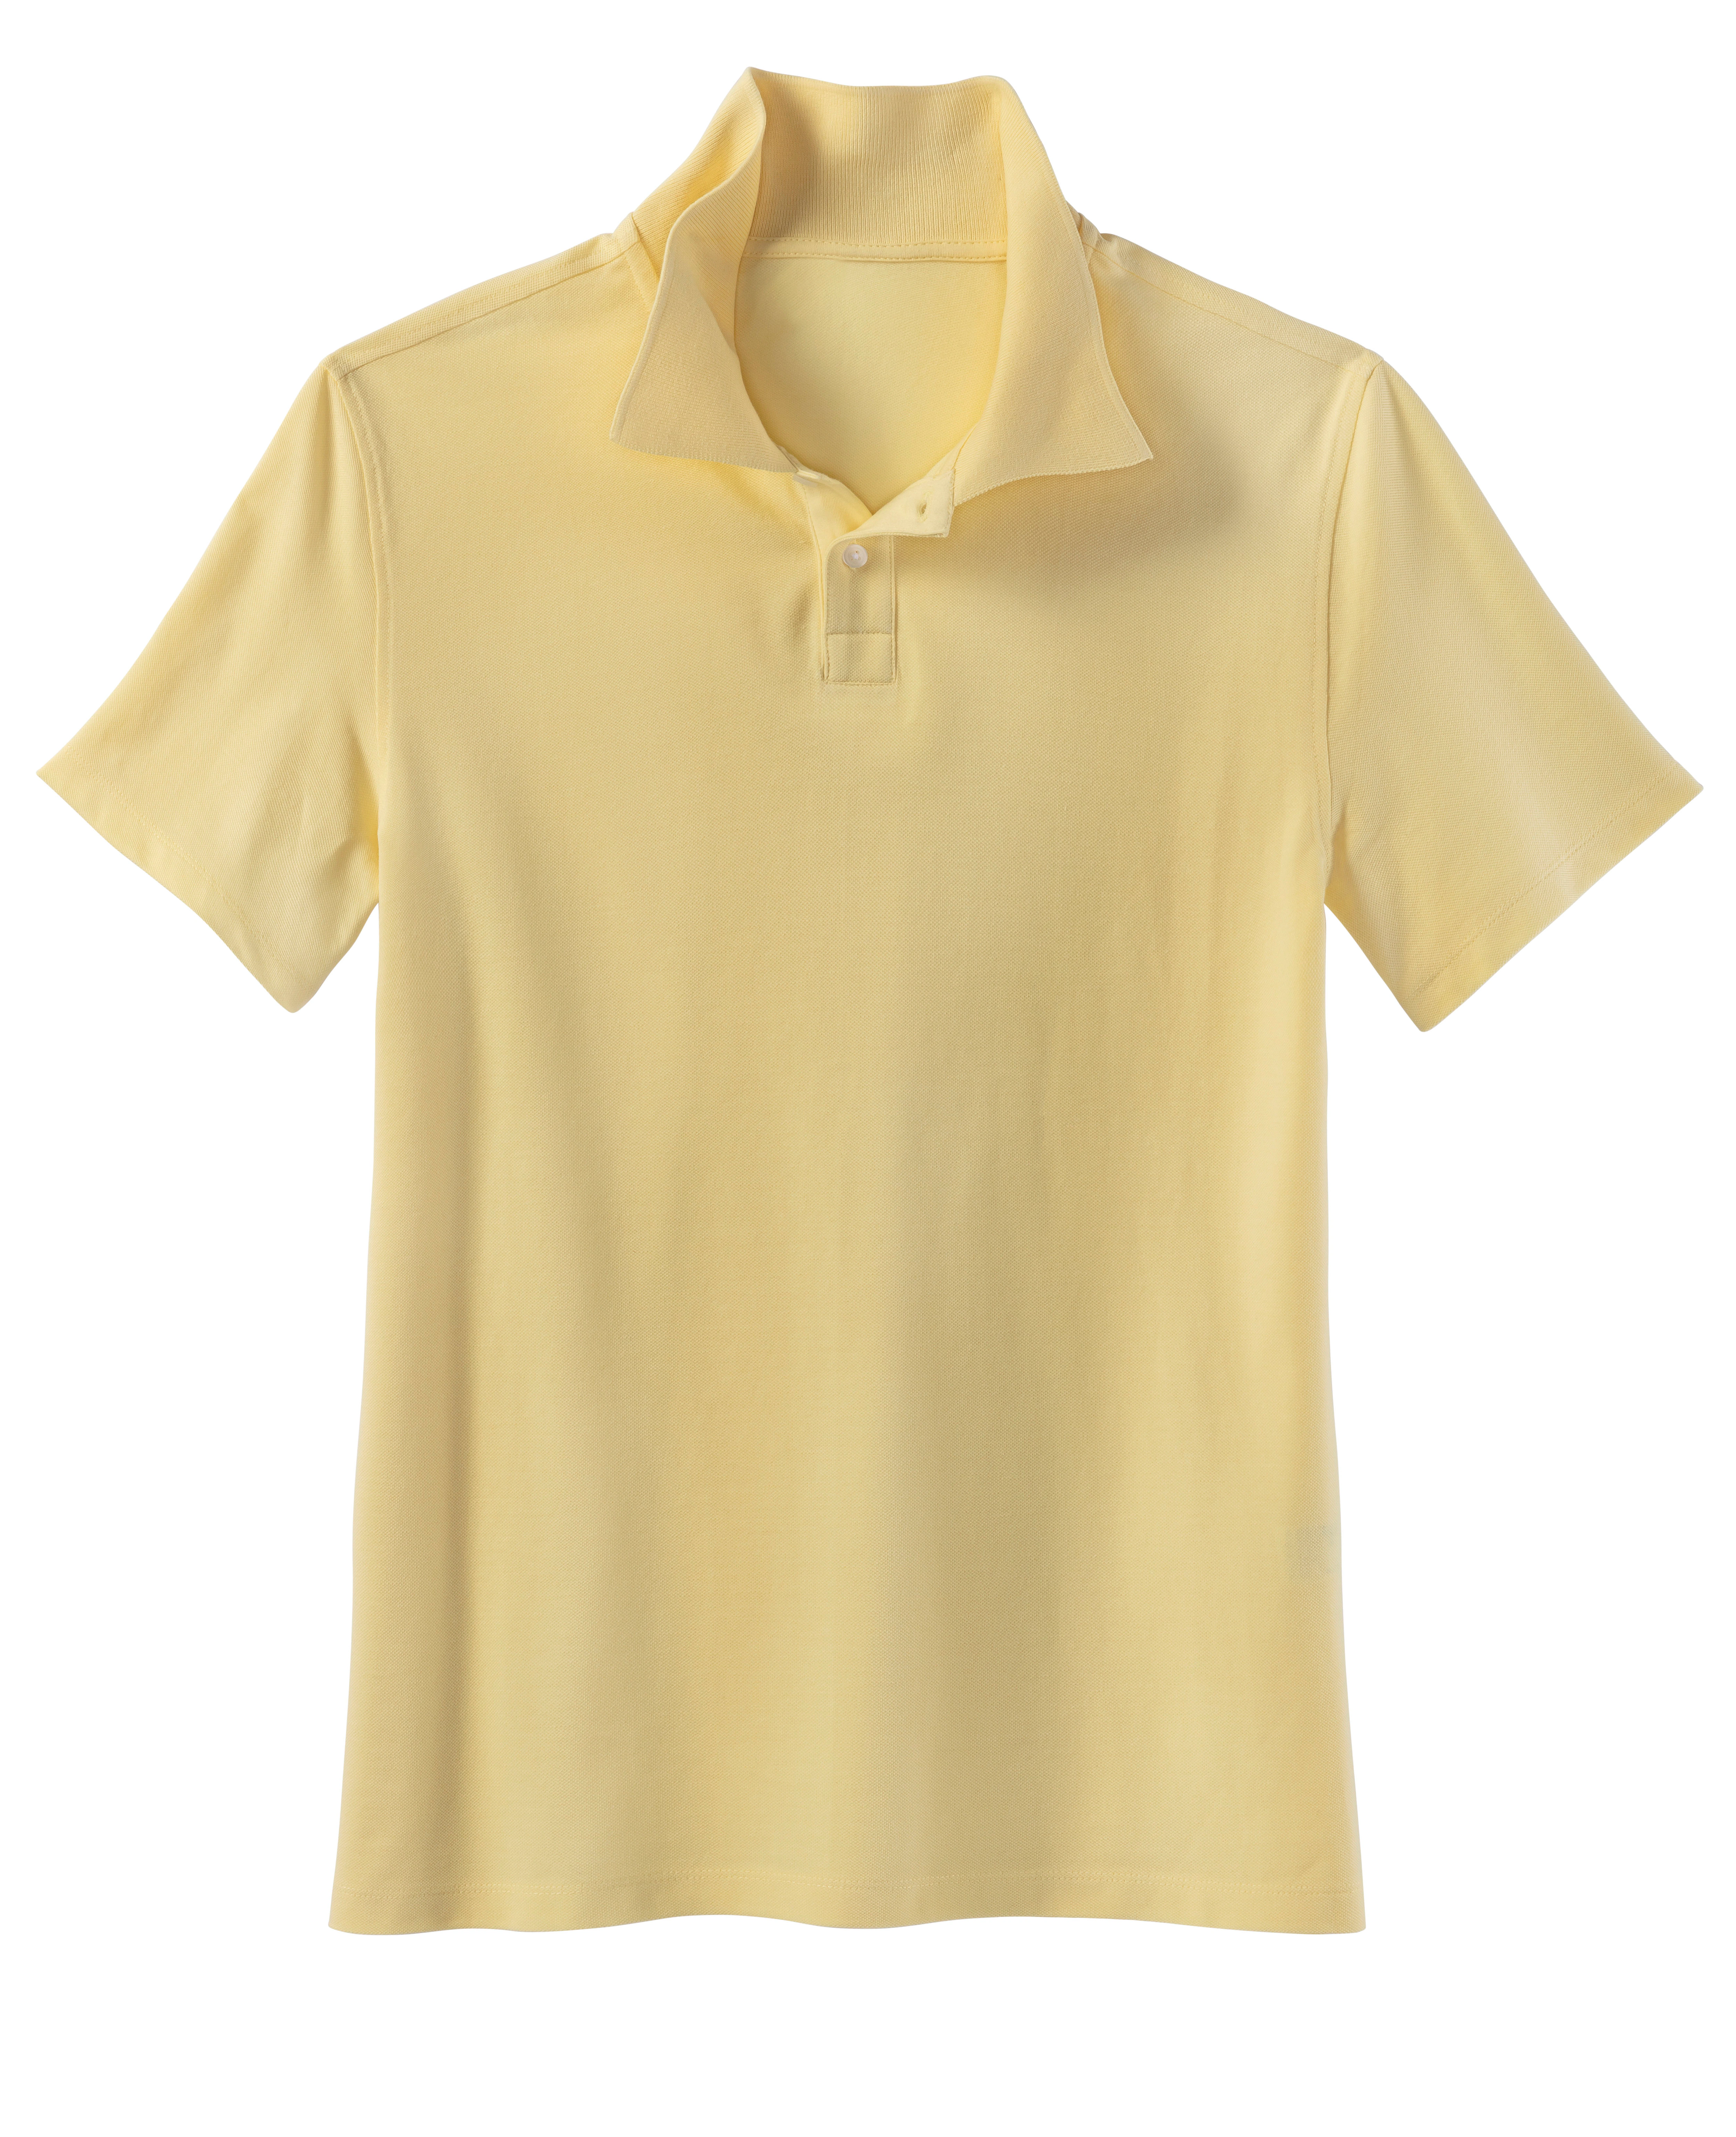 Beachtime Poloshirt, Kurzarm, Shirt mit Polokragen, Baumwoll-Piquè günstig online kaufen